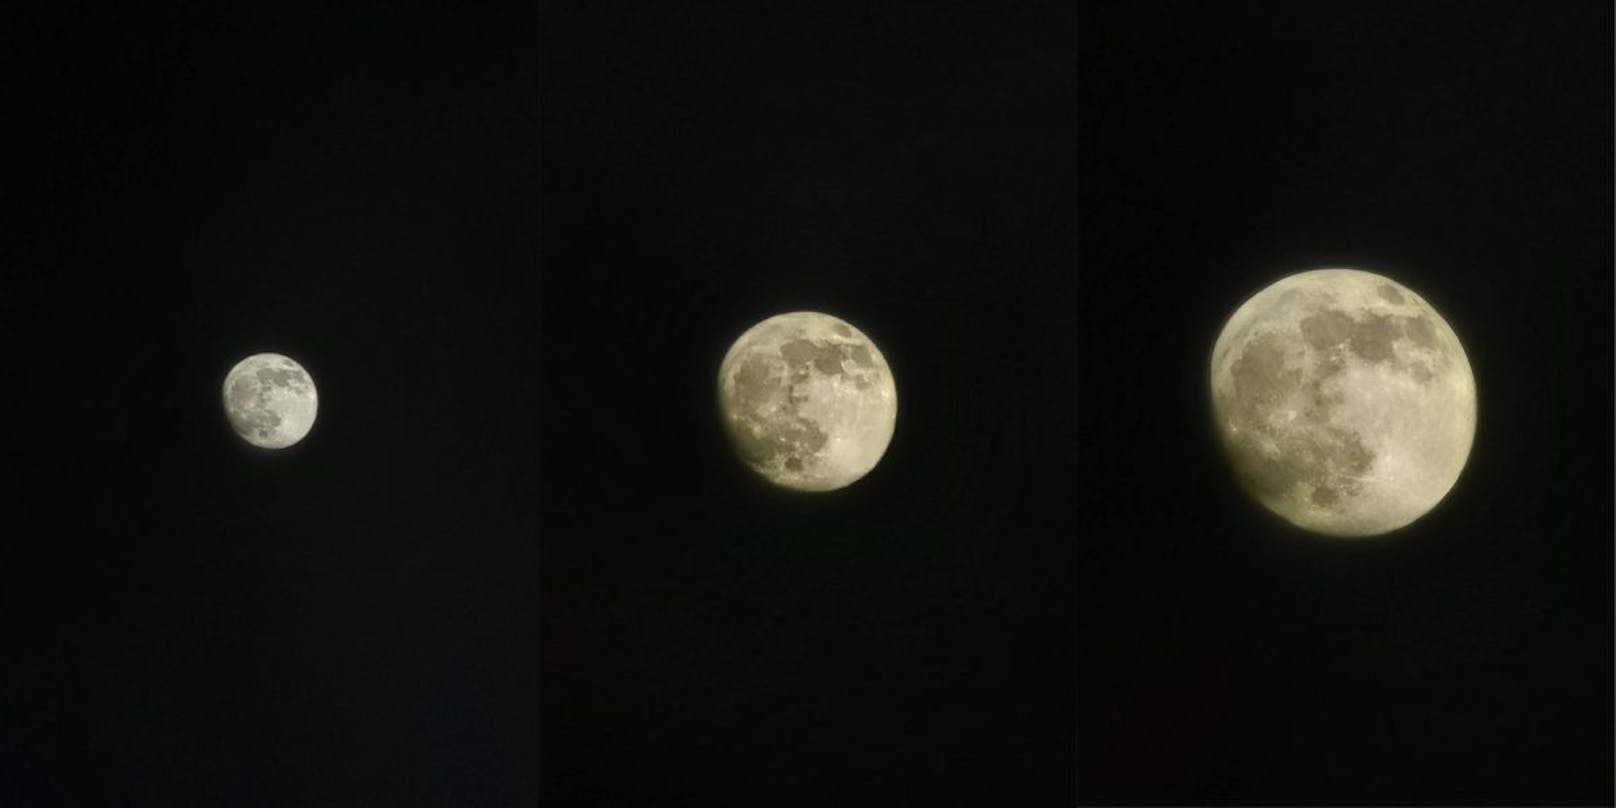 Und natürlich der obligatorische Schnappschuss vom Mond – in 10facher, 20facher und 30facher Zoomstufe.